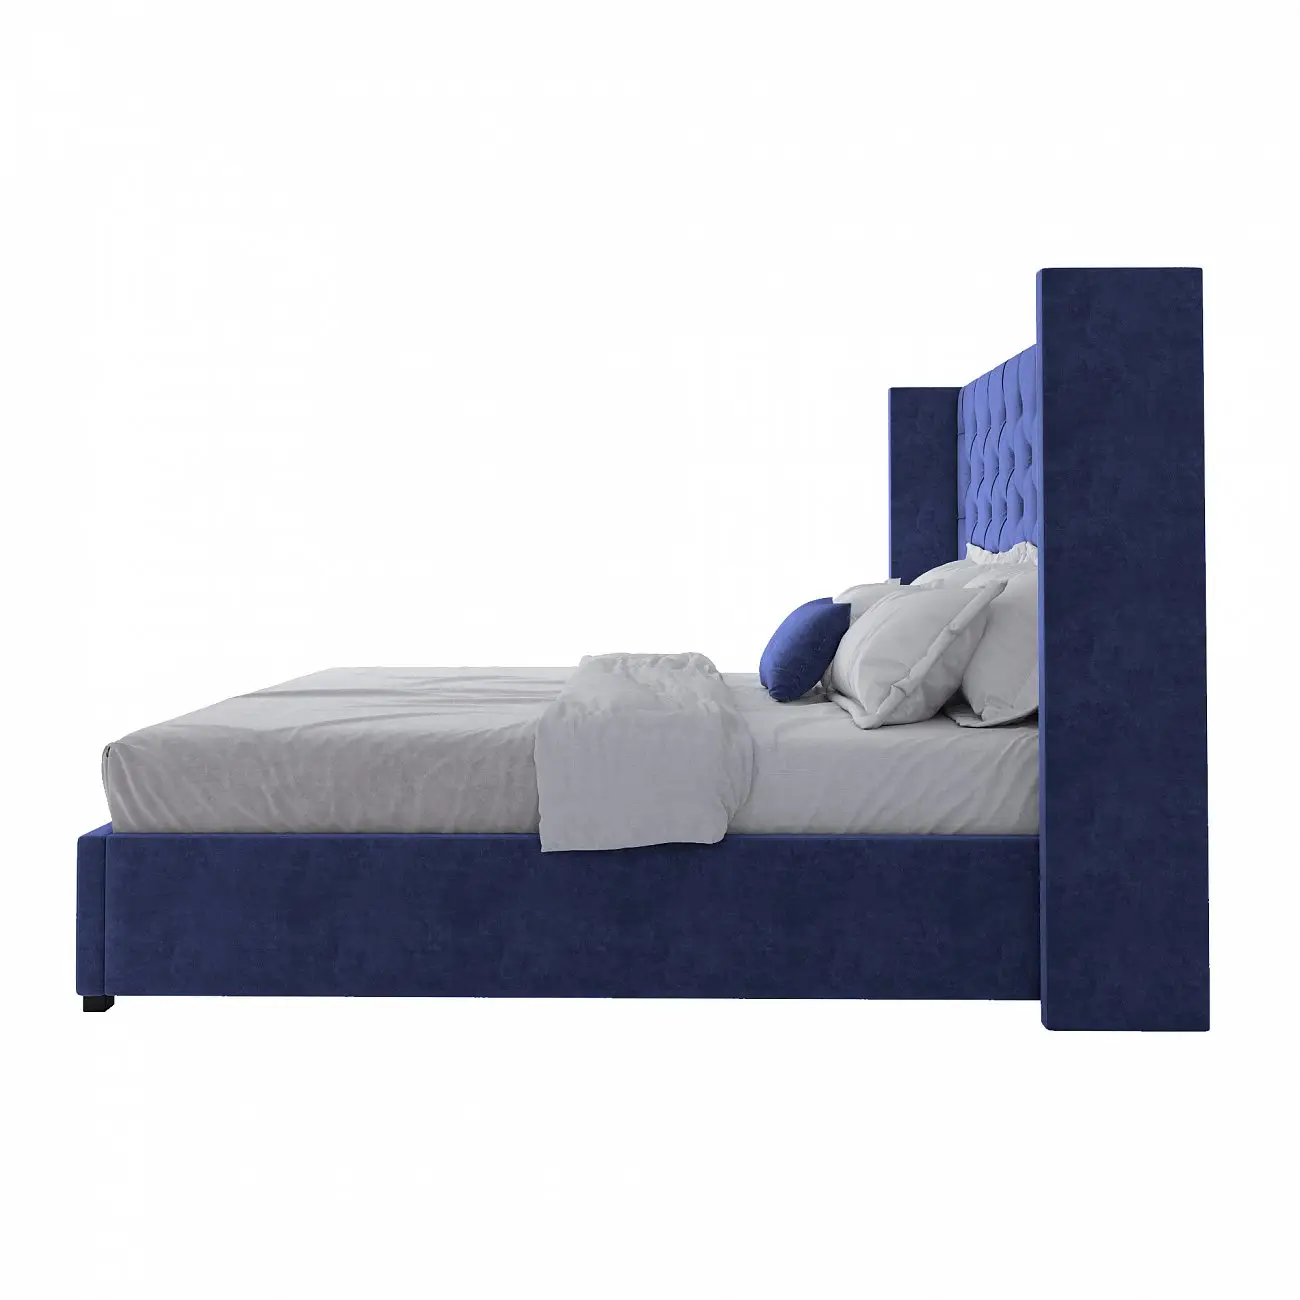 Кровать двуспальная с мягким изголовьем 180х200 см темно-синяя Wing-2